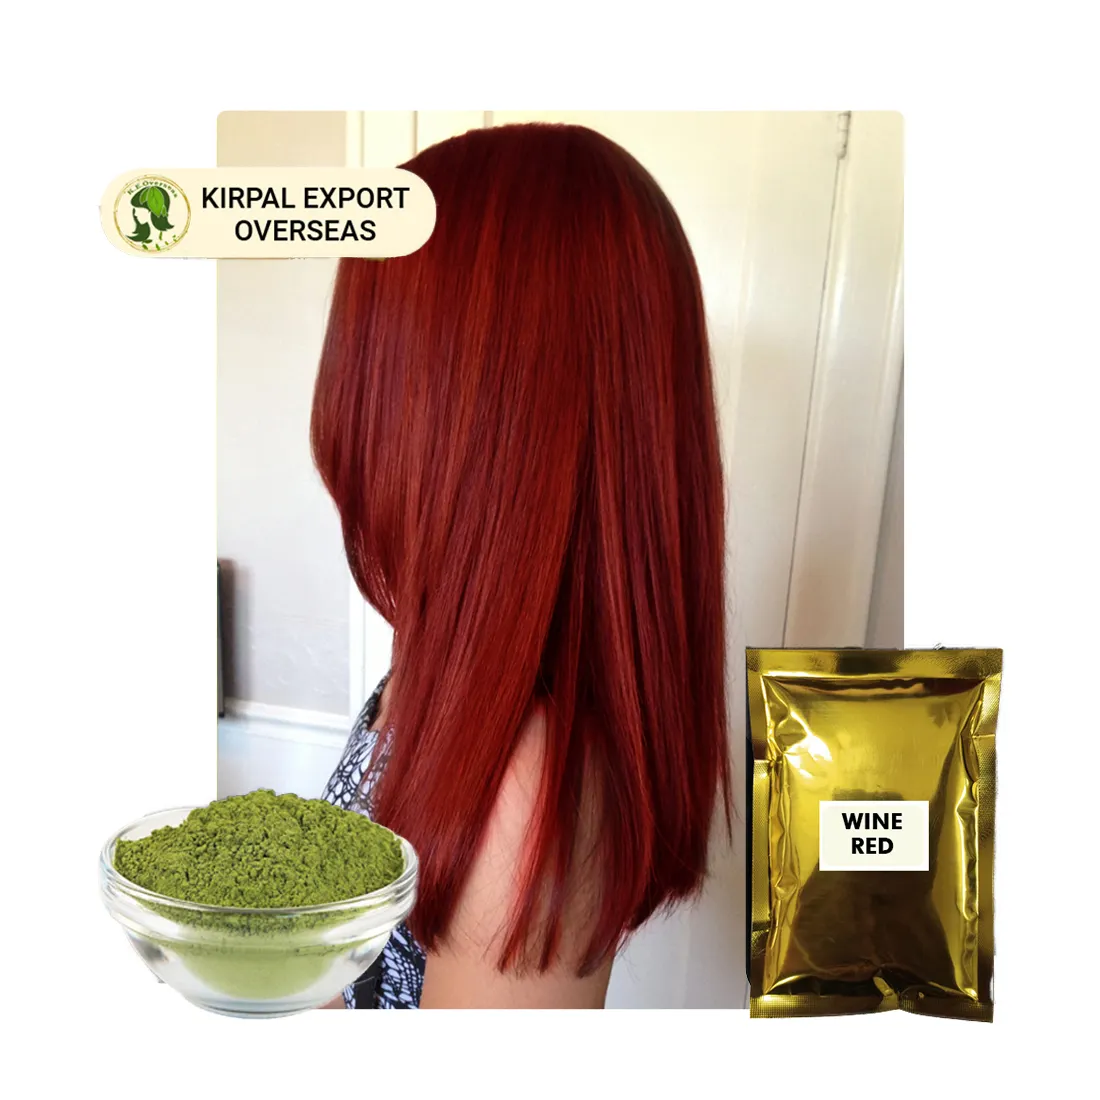 Ordine all'ingrosso Mehandi Color Powder raffinato hennè naturale colori per capelli Rajasthan produttore